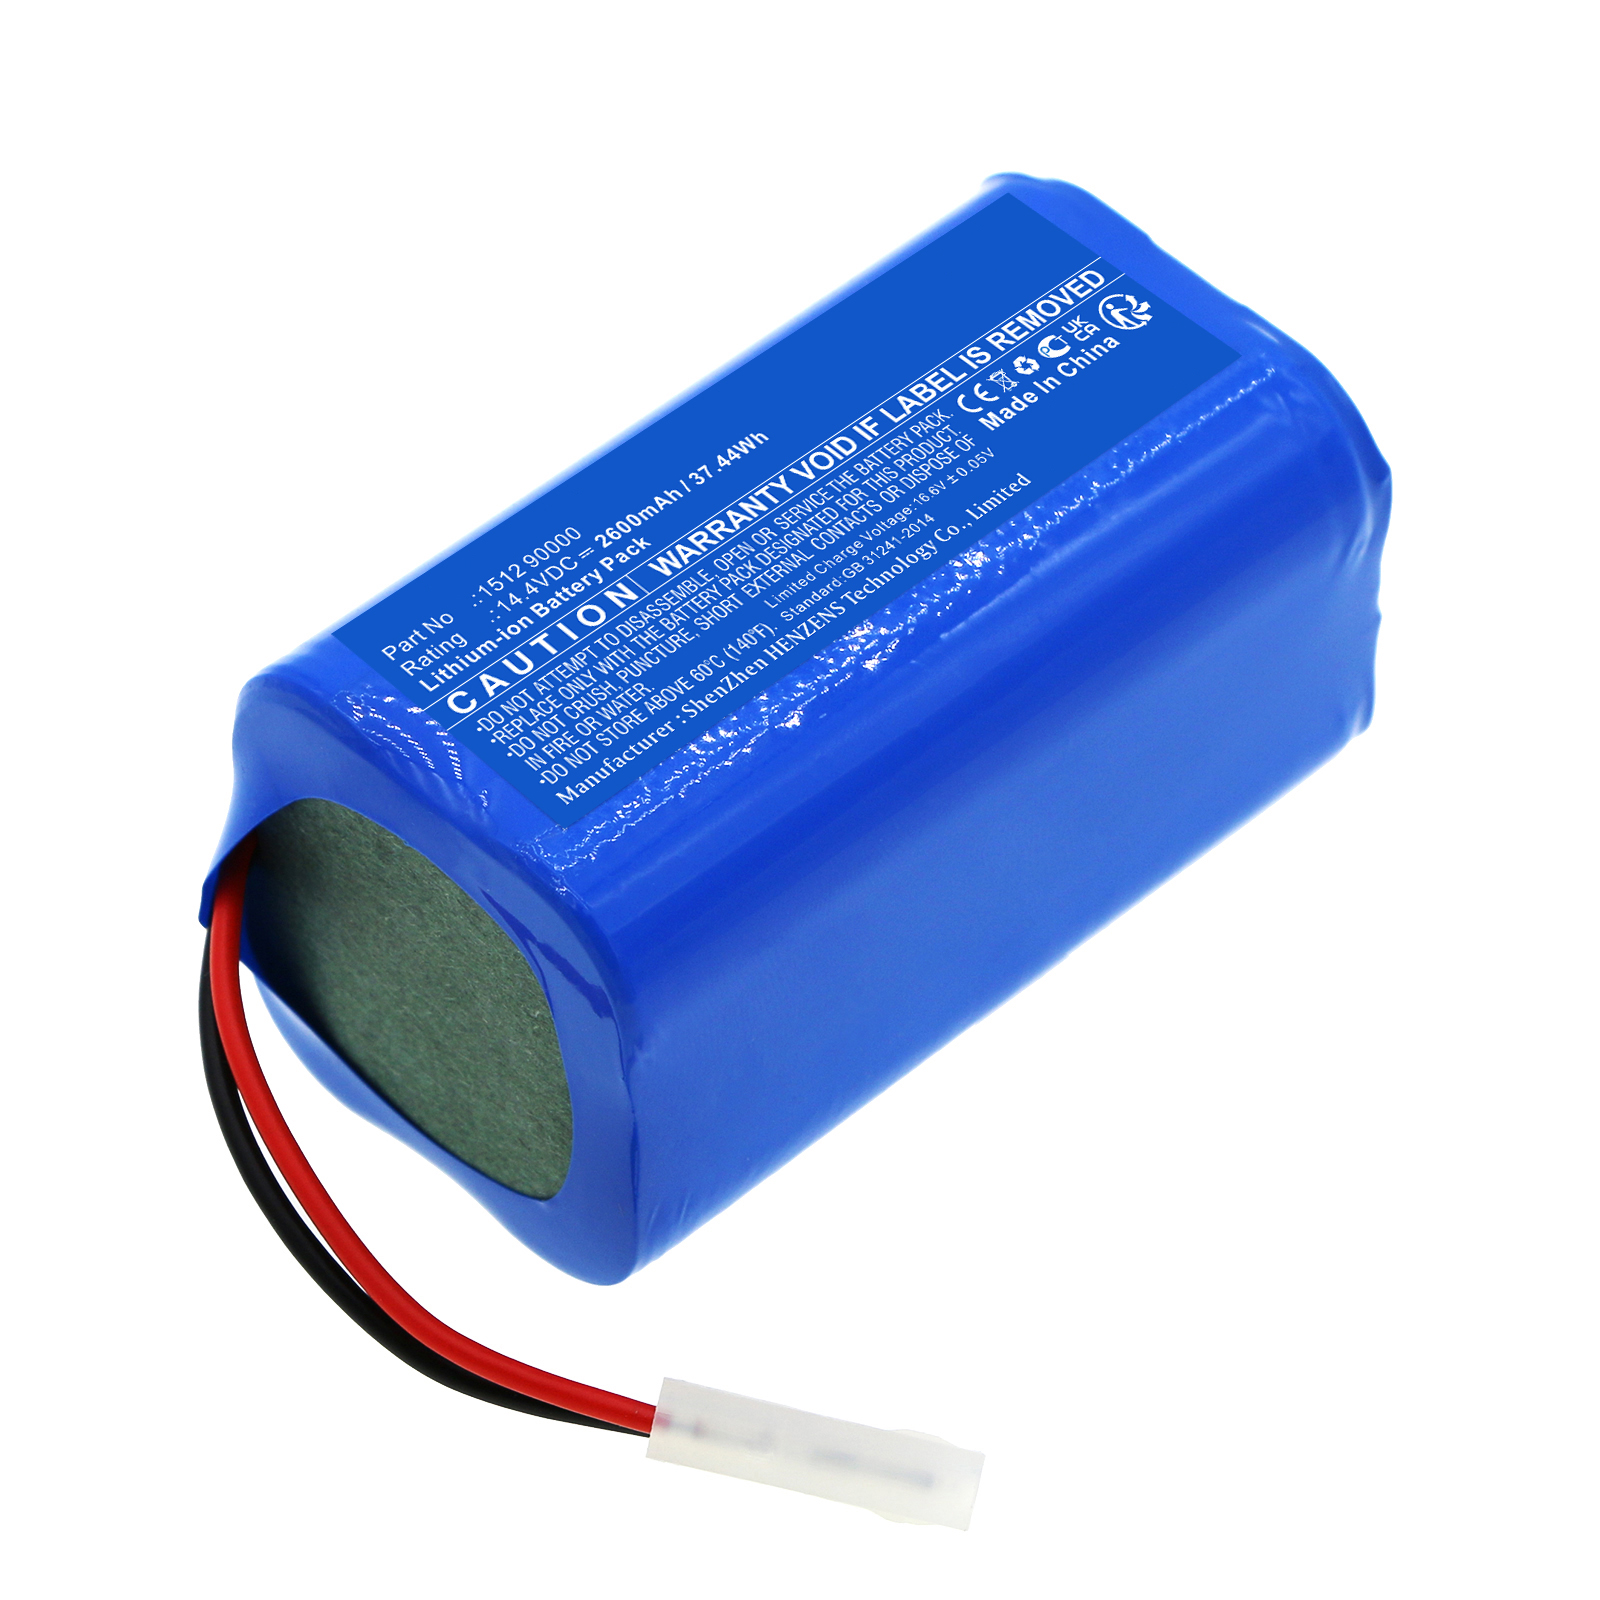 Batteries for ETAVacuum Cleaner